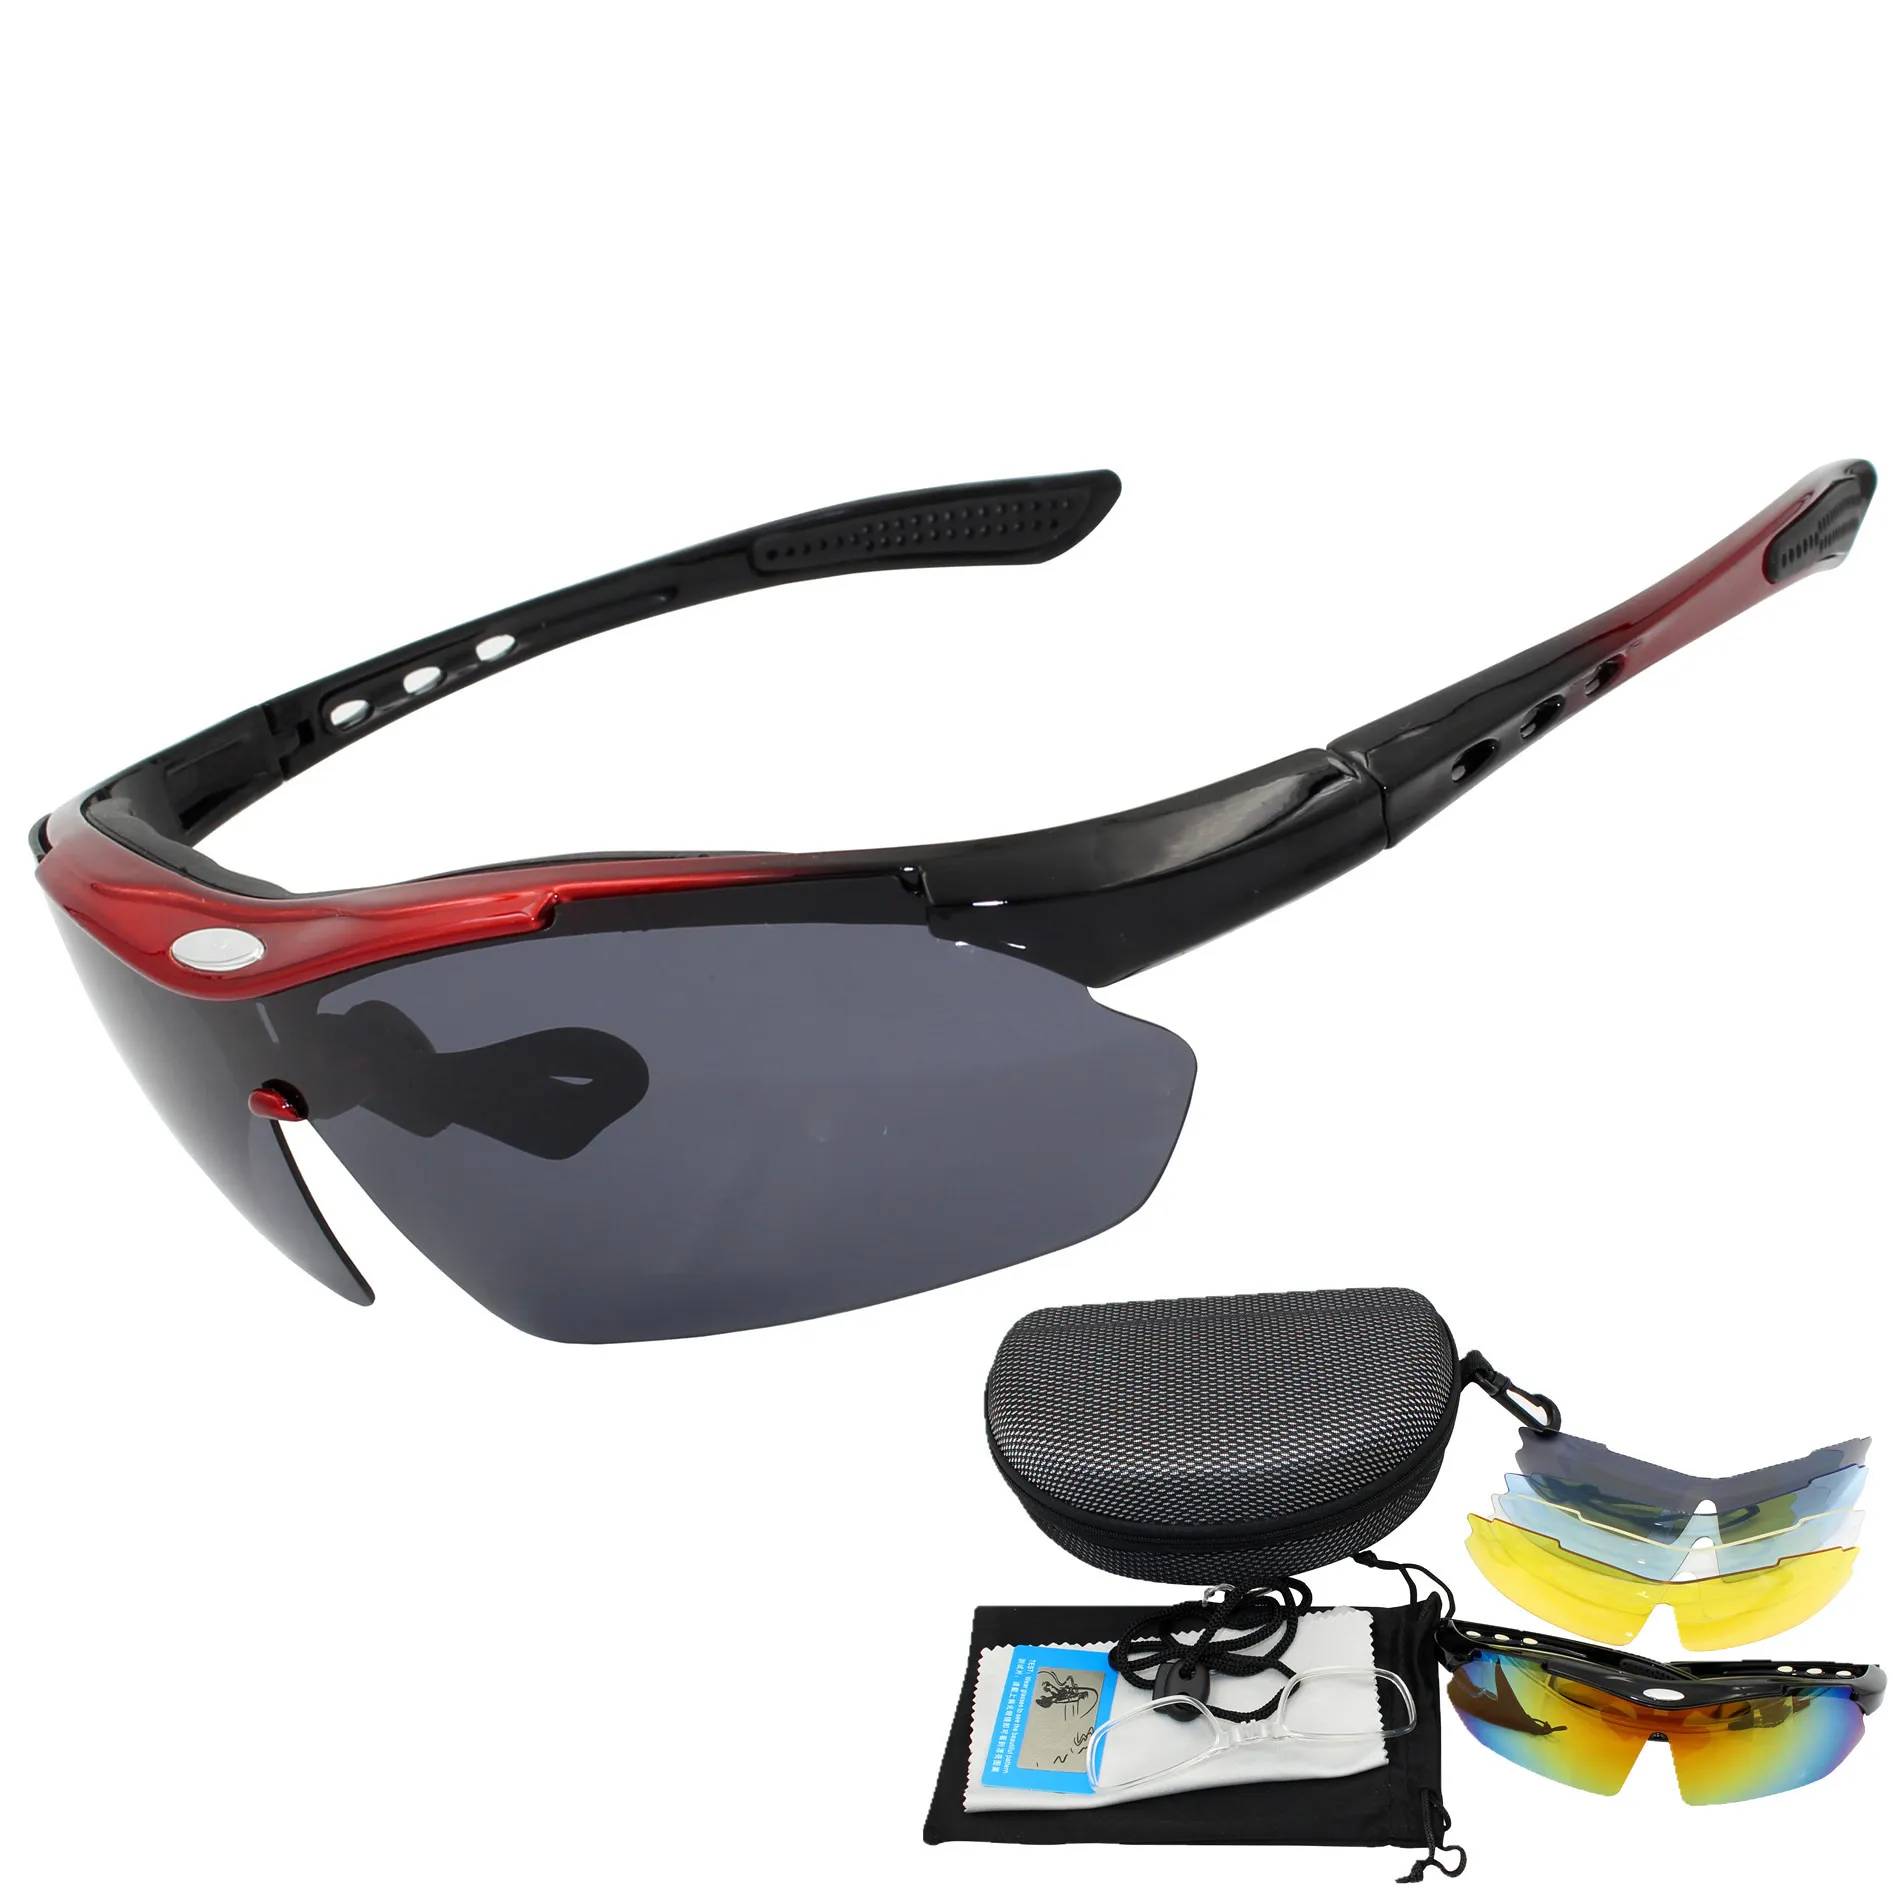  V VILISUN Sports Sunglasses Goggles for Sports